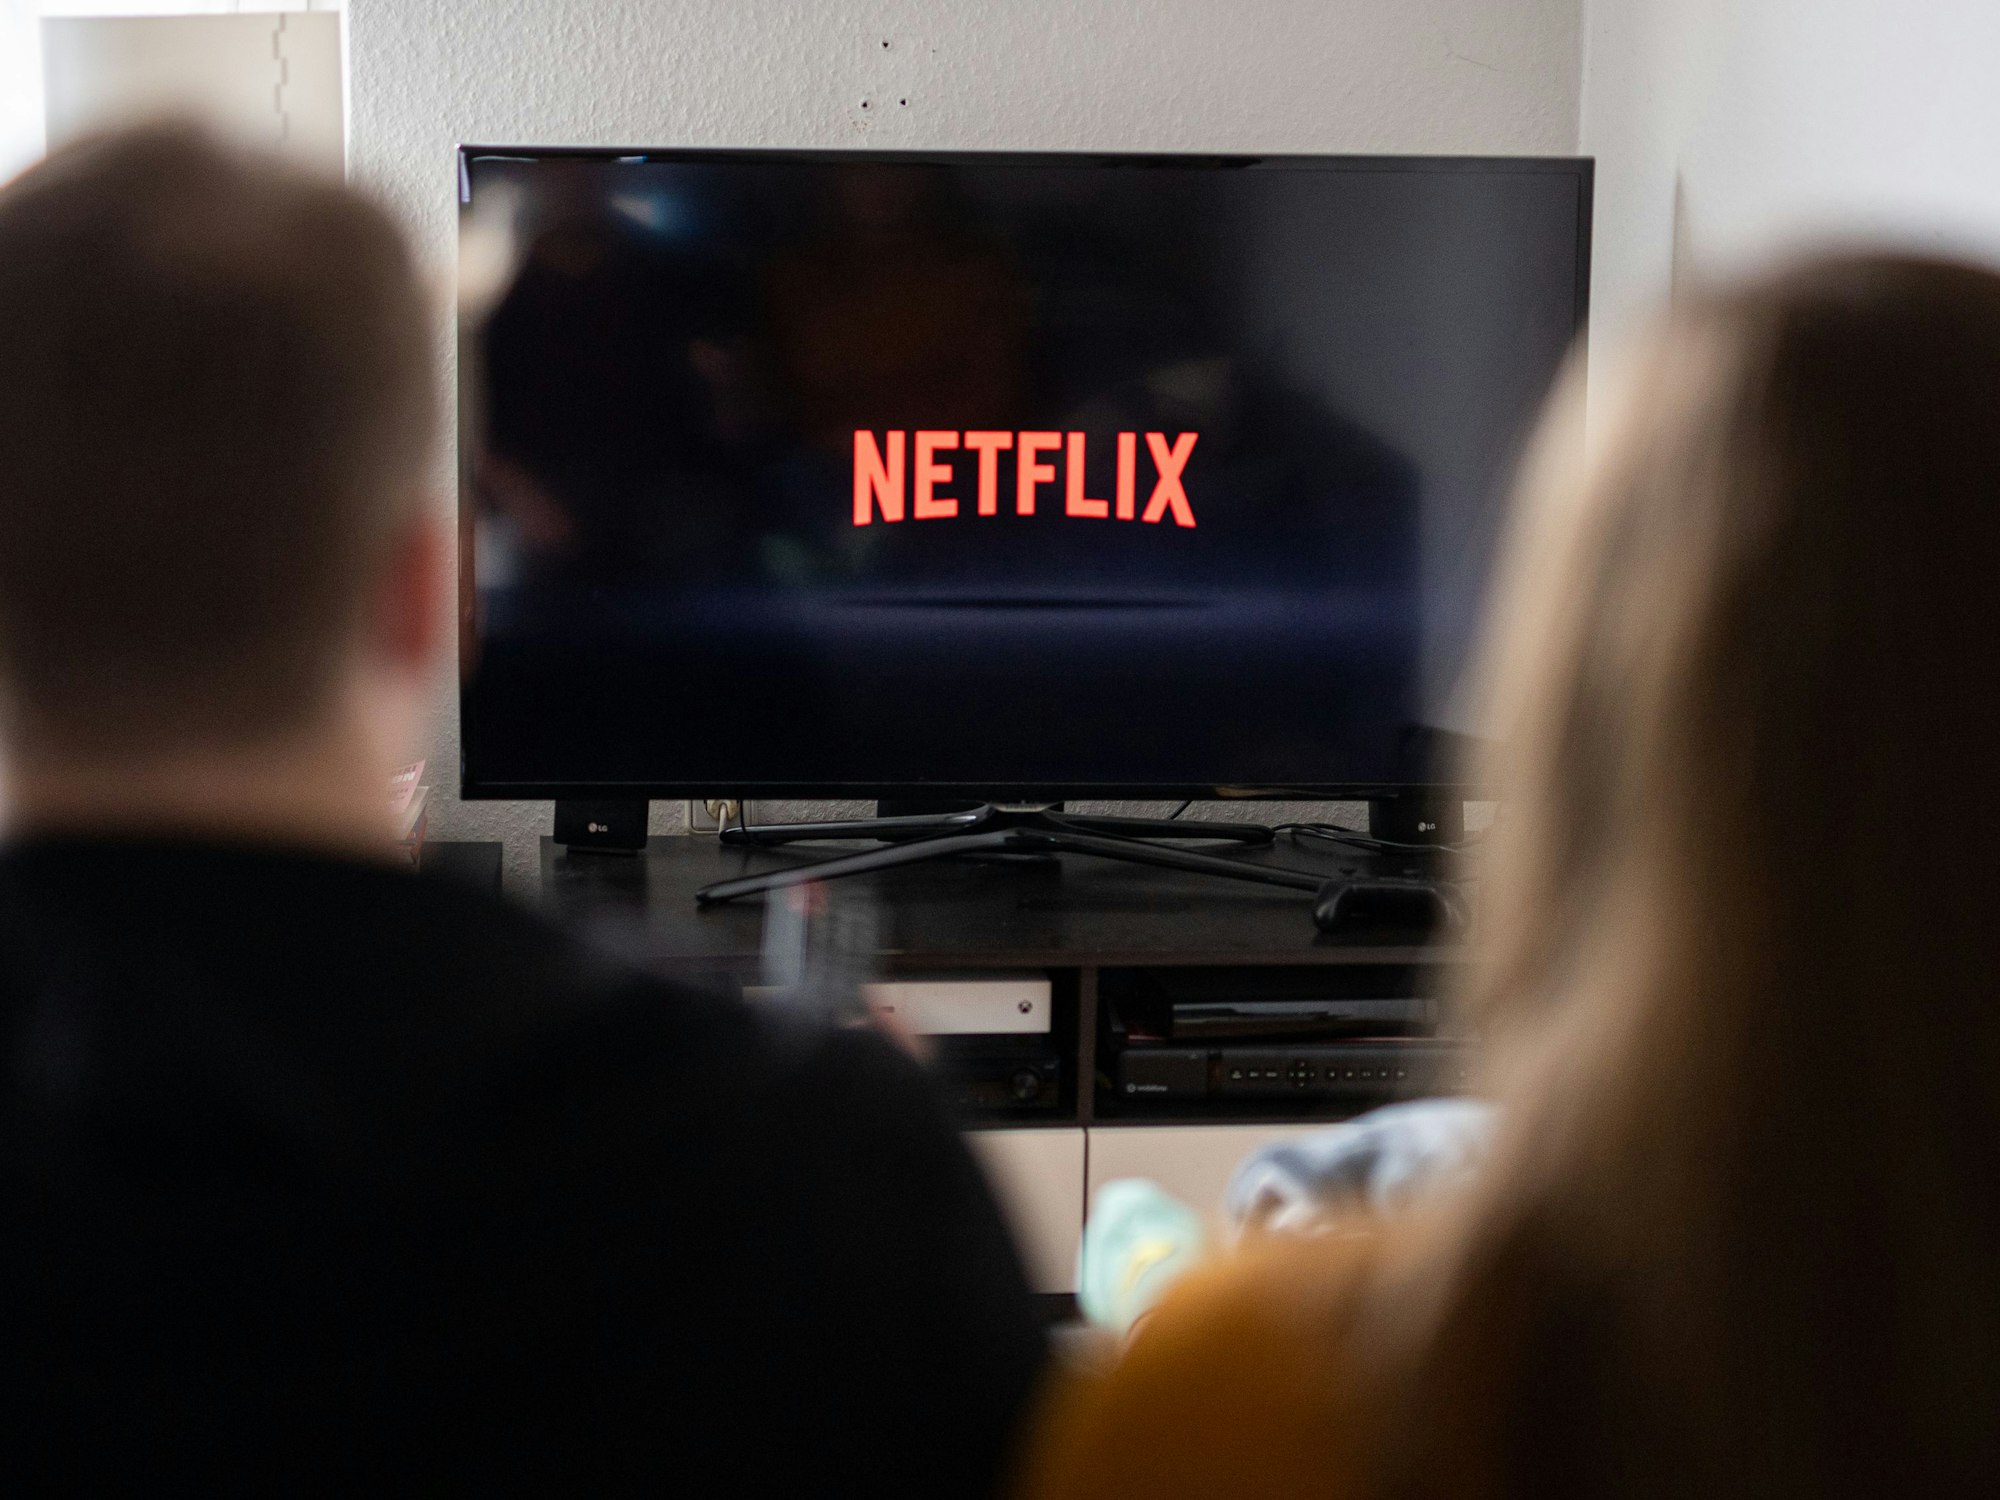 Zwei Personen sitzen vor einem Fernseher, auf welchem das Logo des Streaming-Anbieters Netflix zu sehen ist.